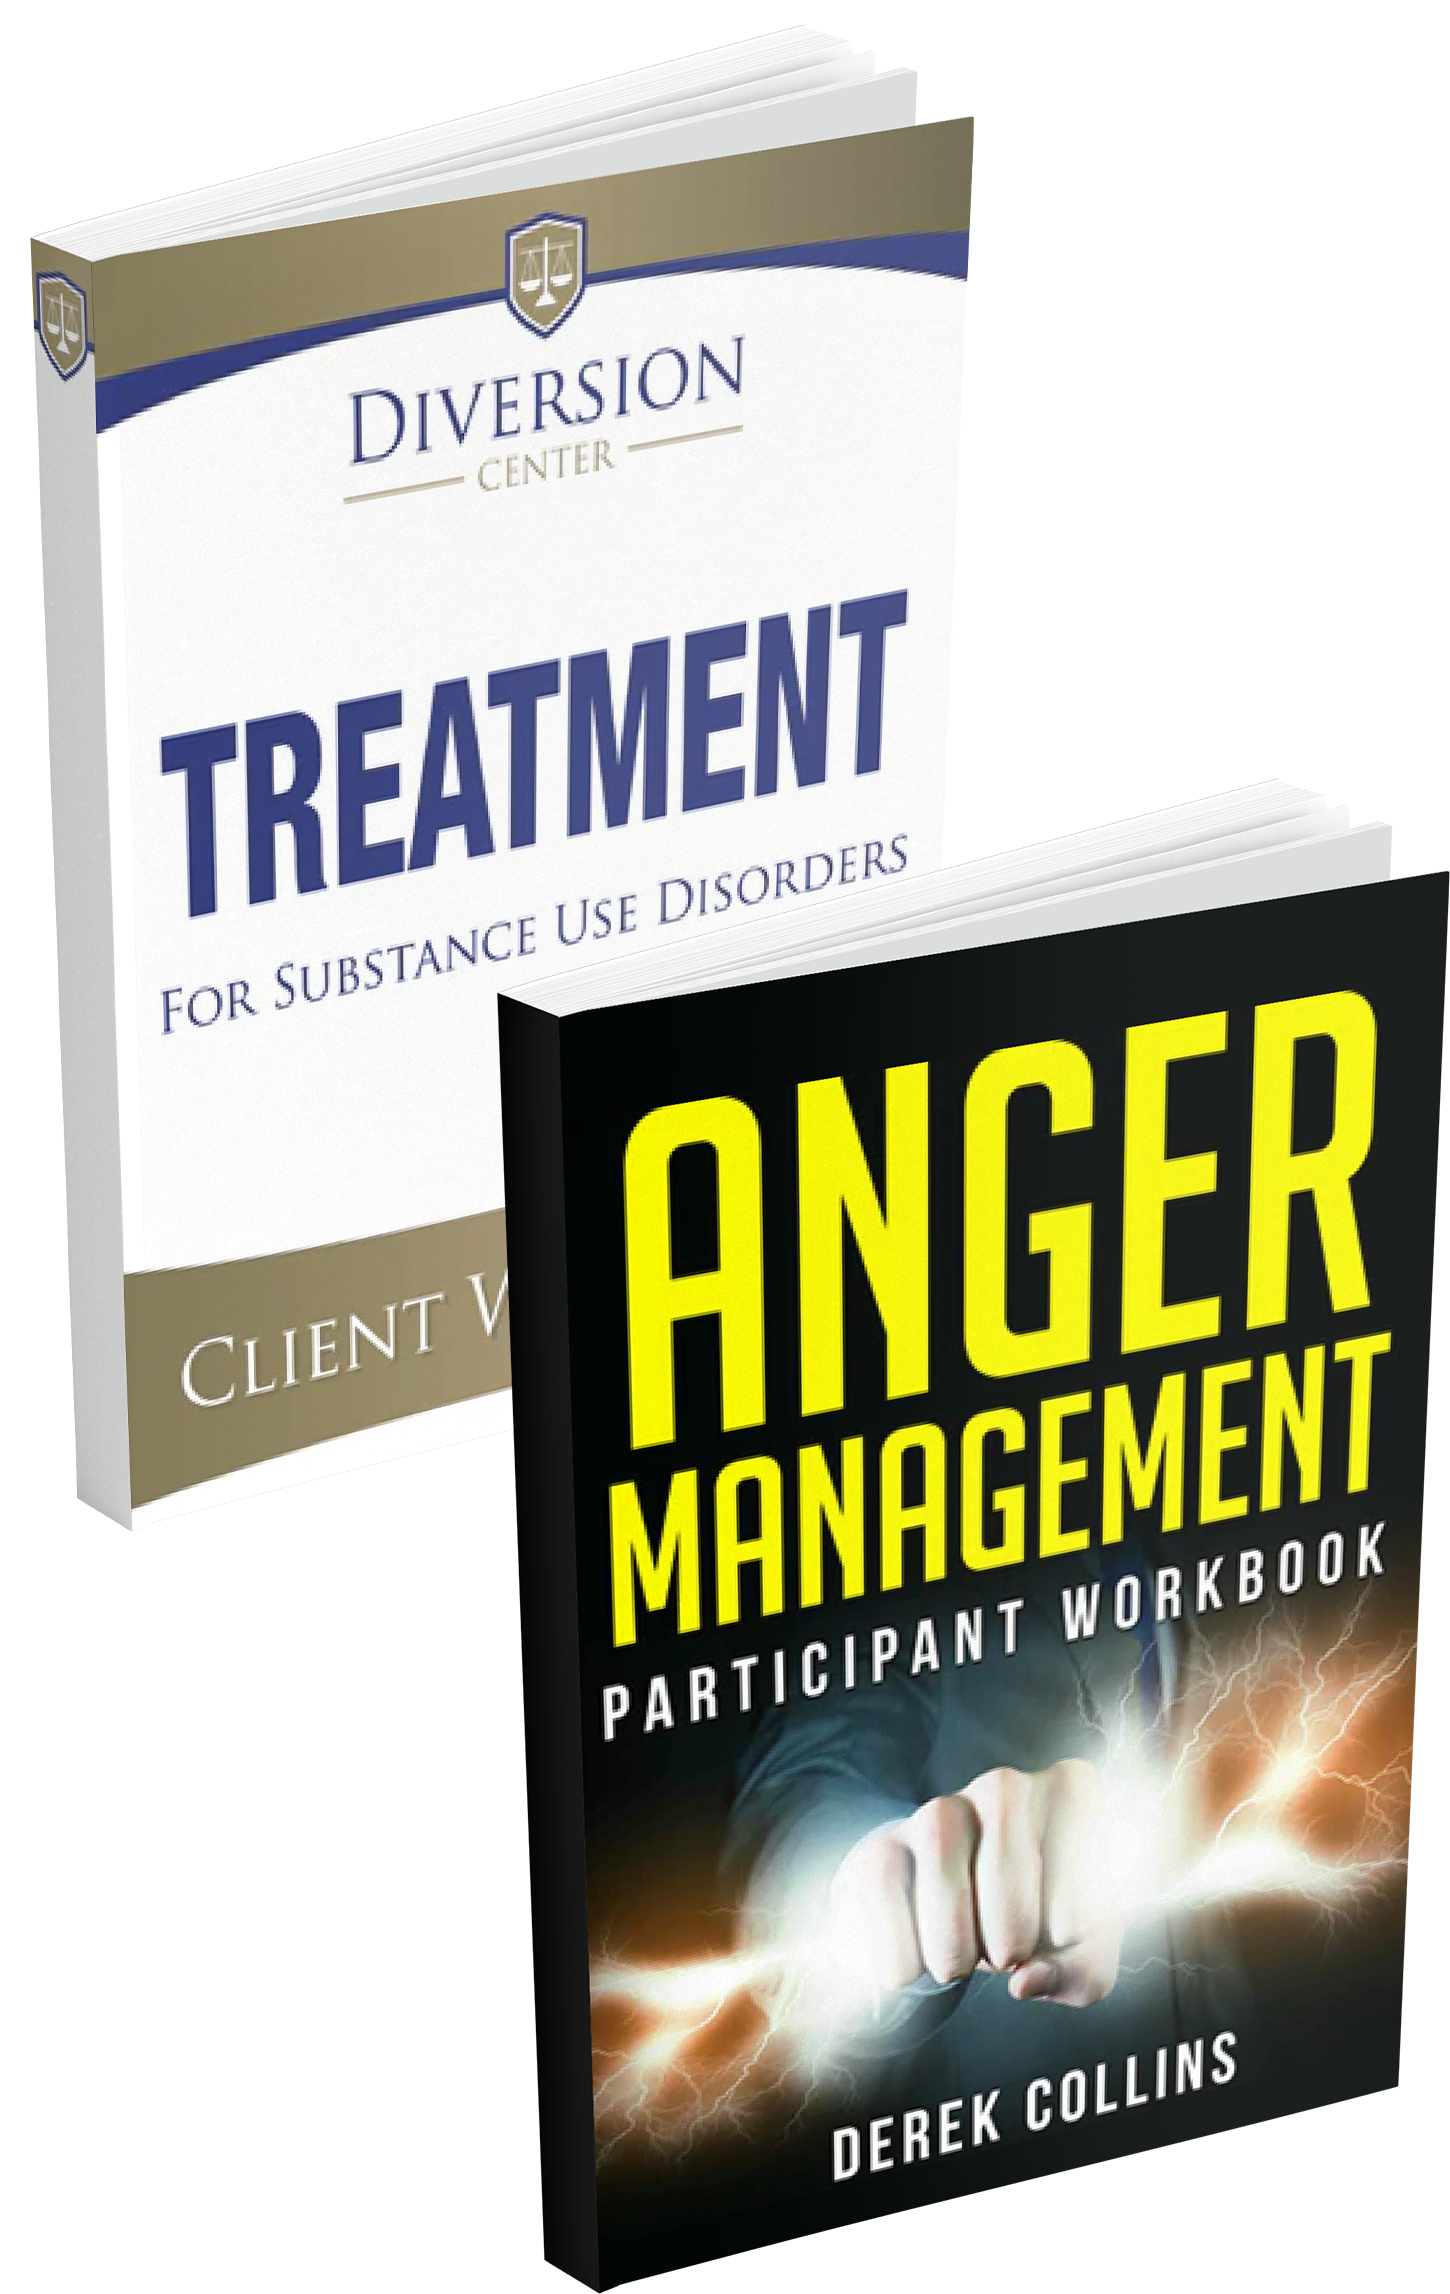 Anger Management + Substance Use Workbook Bundle